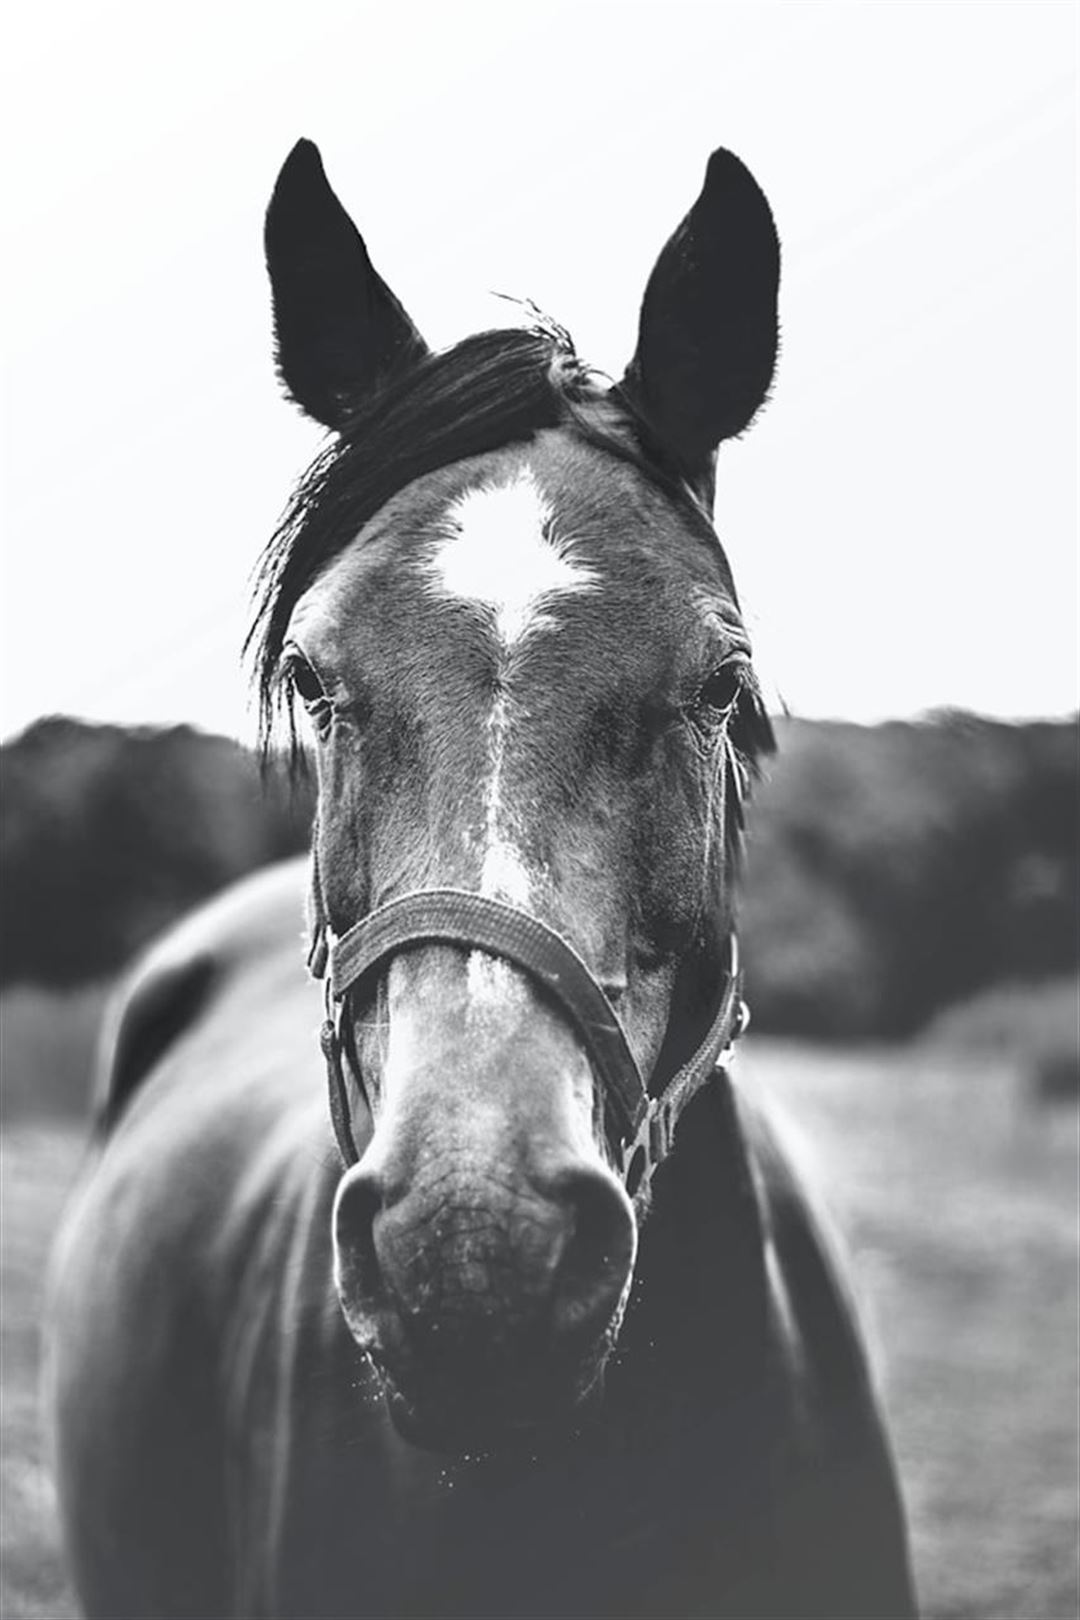 Muk hest: Årsager, forebyggelse og behandling